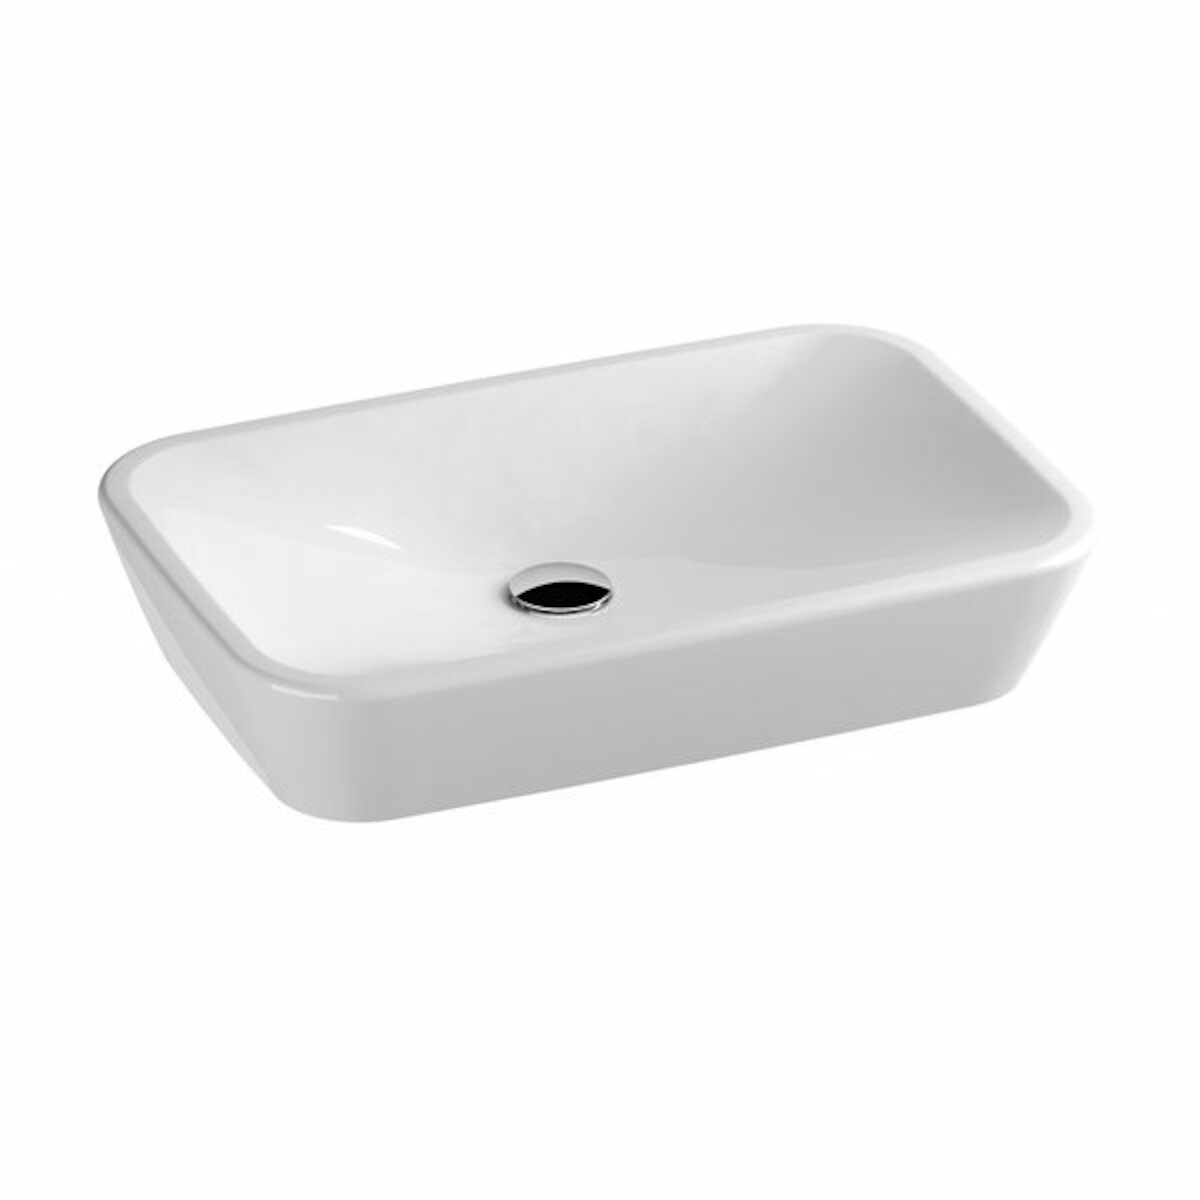 Umivalniki CERAMIC600R0 Ravak Ceramic 60 x 40 cm pravokotni nadpultni keramični umivalnik | KOPALNICA-ONLINE.SI